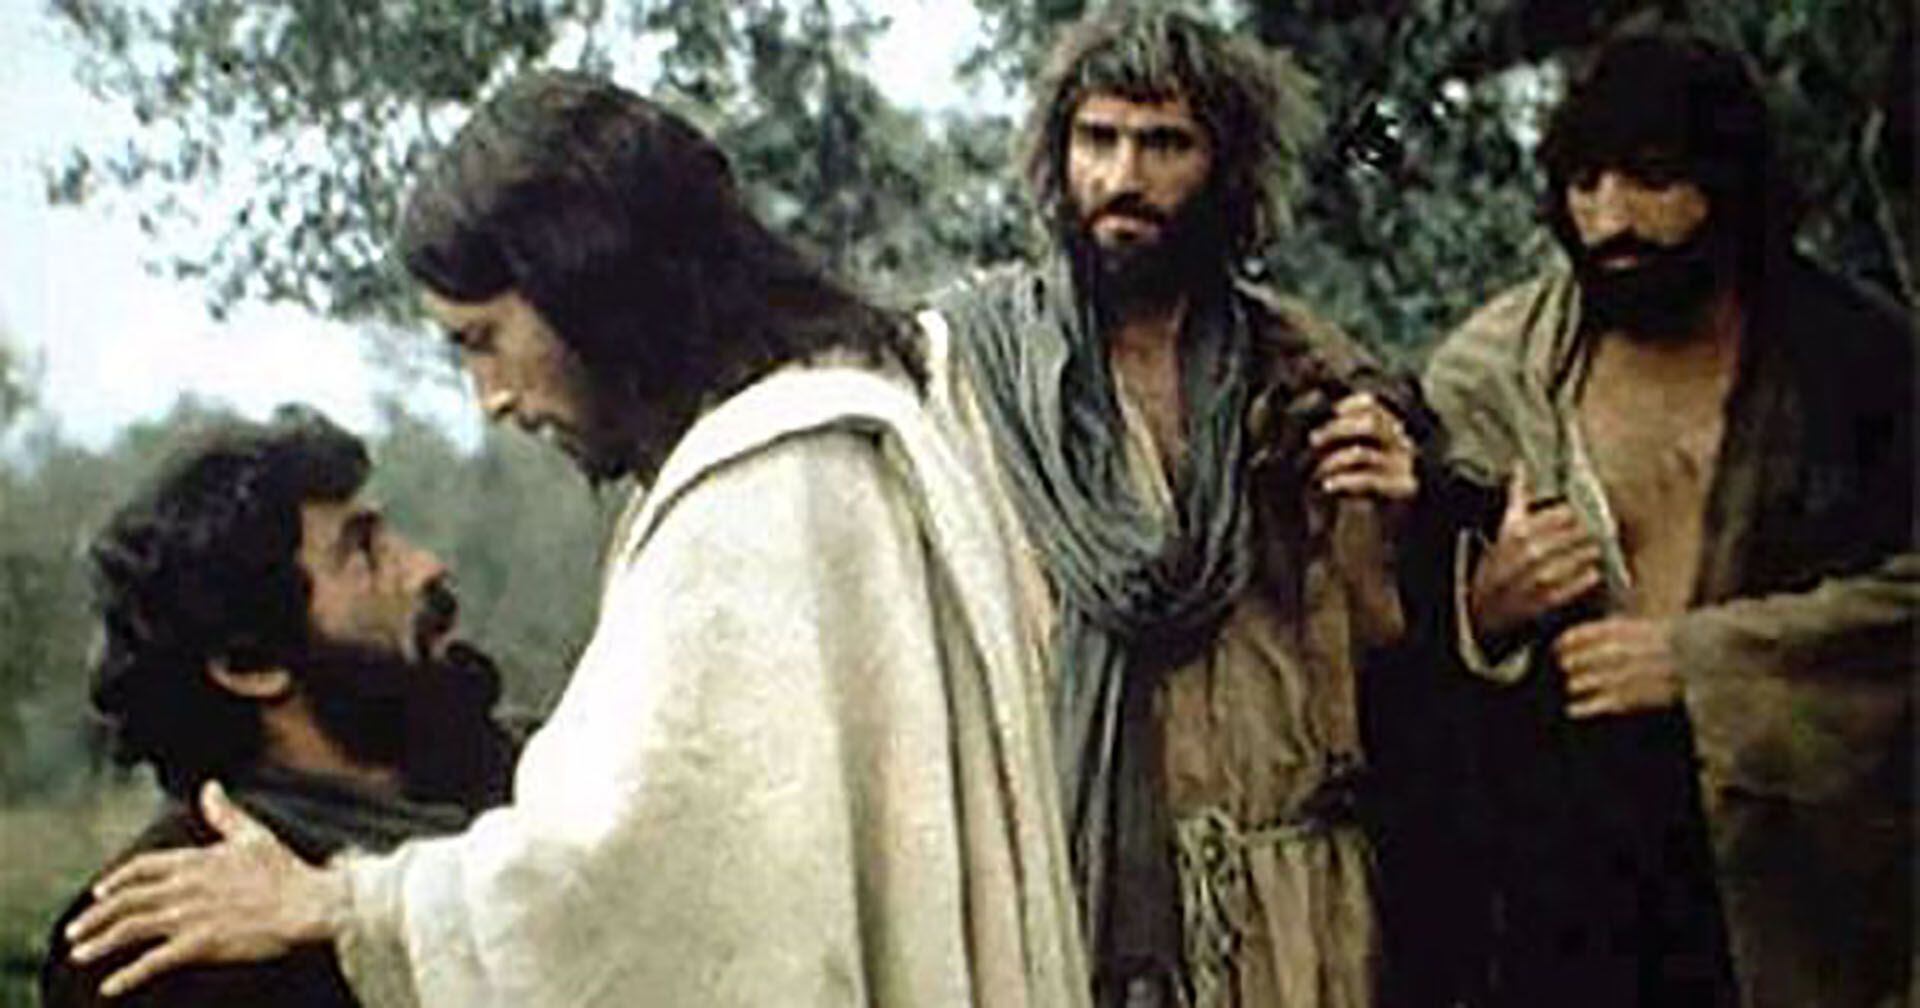 Jesús de Nazaret ha sido interpretado por distintos personajes de tez blanca y ojos claros (Archivo)